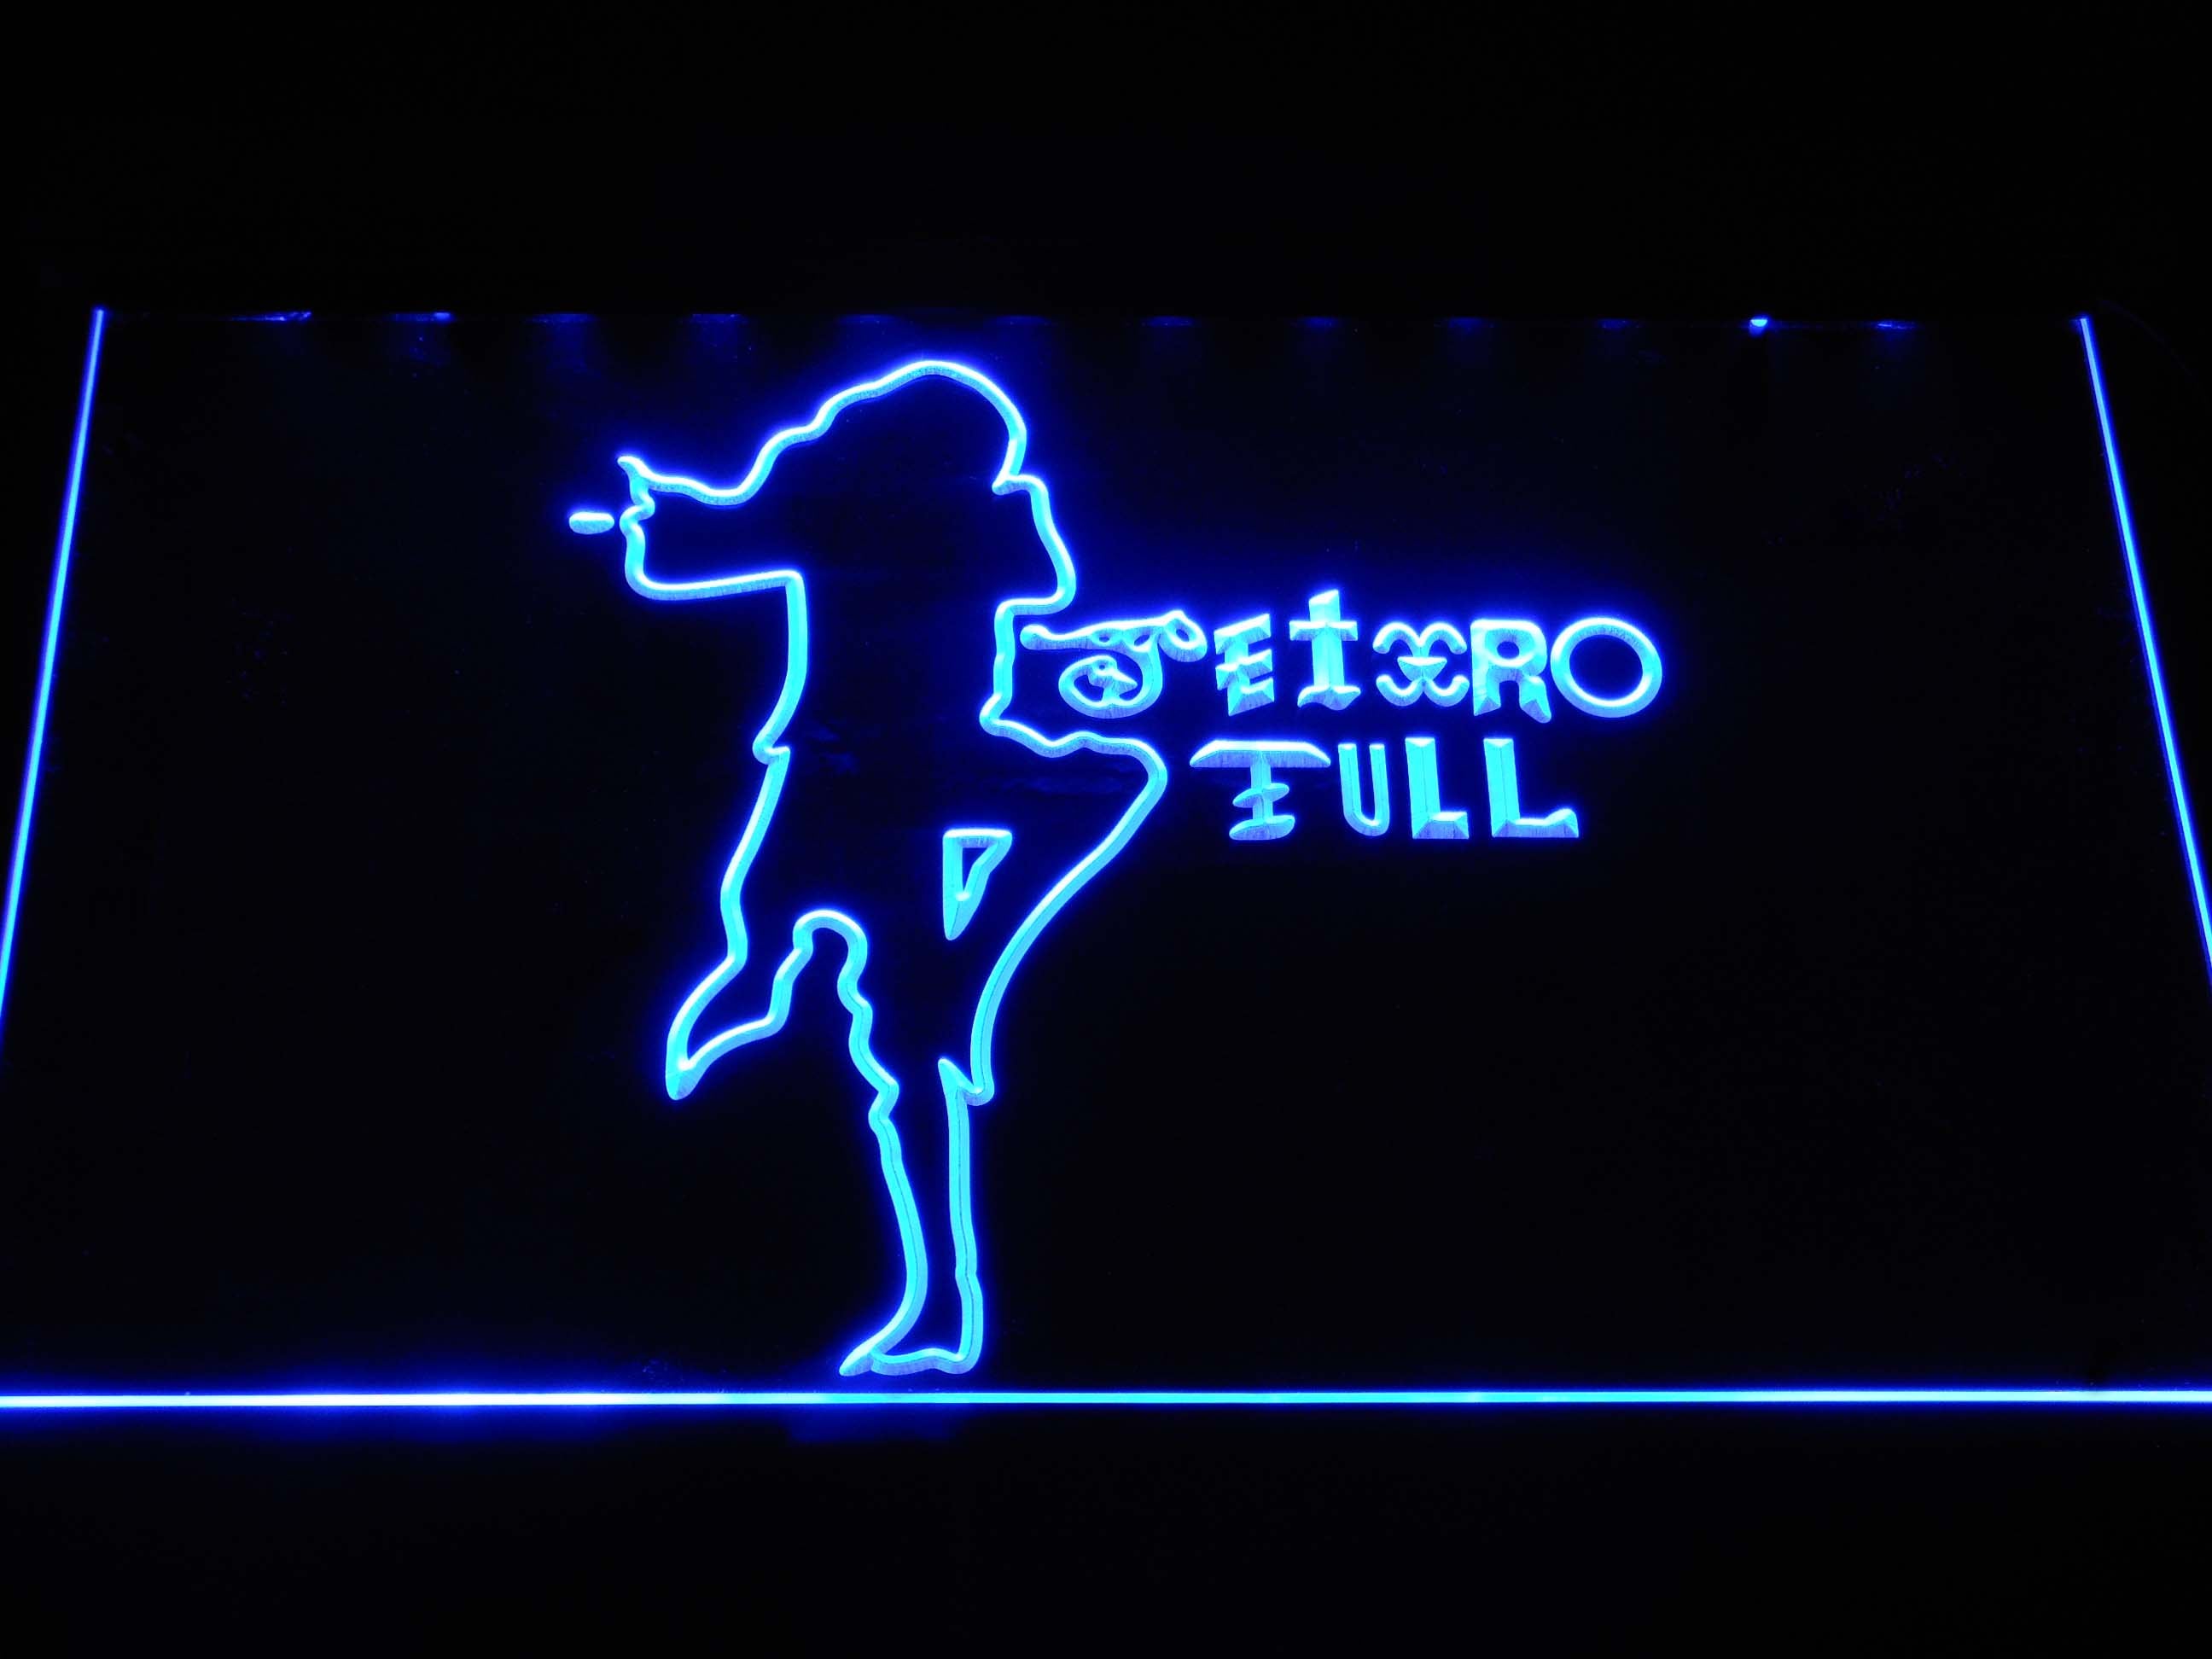 Jethro Tull Music LED Neon Sign